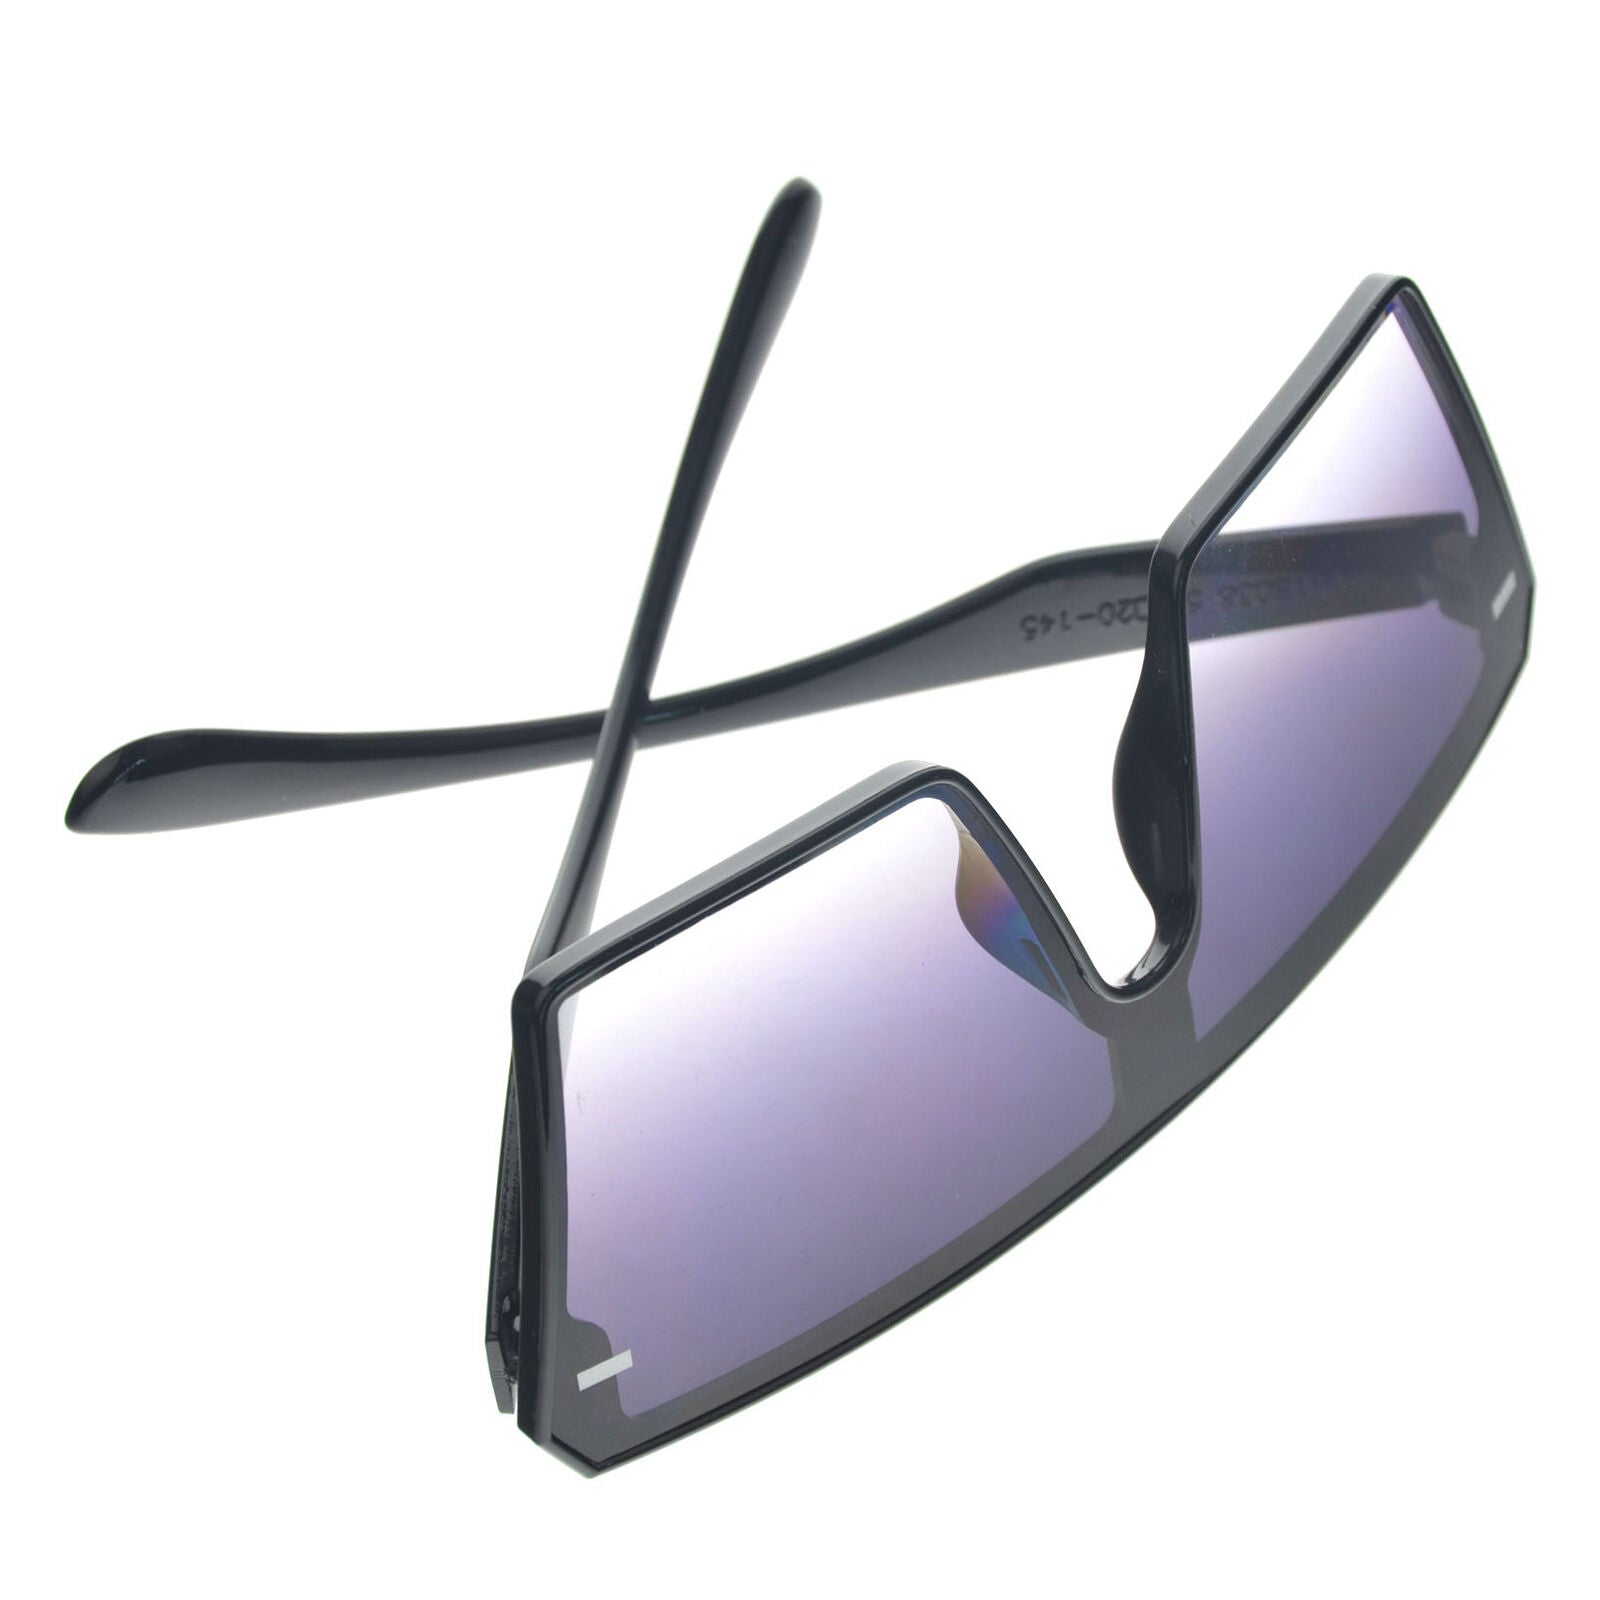 Trending 2020 Oversized Square Sunglasses For Women Driving Outdoor Sun Glasses